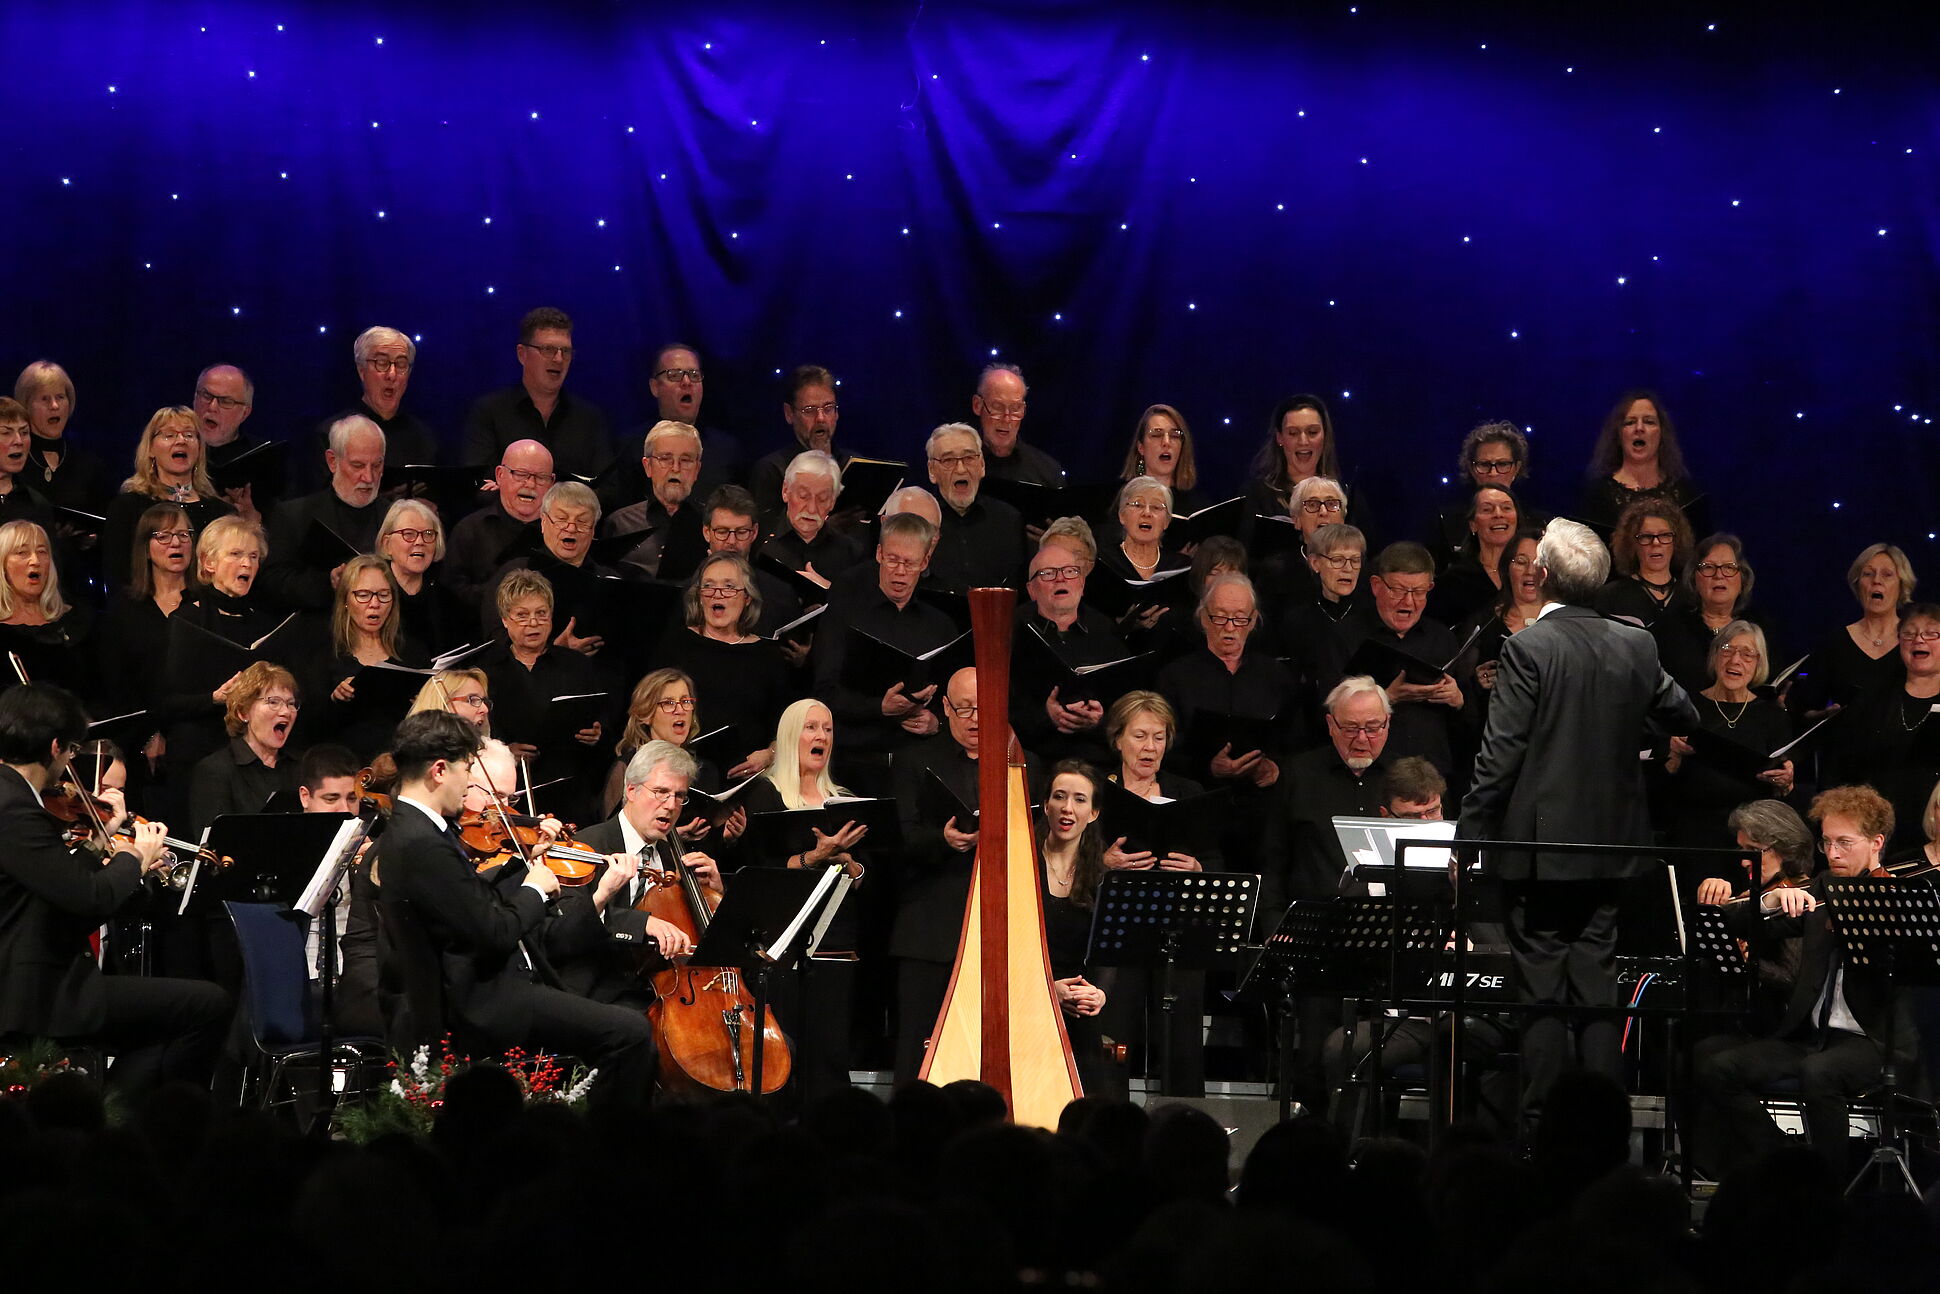 Der Konzertchor steht samt Dirigent auf der Bühne und alle sind festlich gekleidet. 